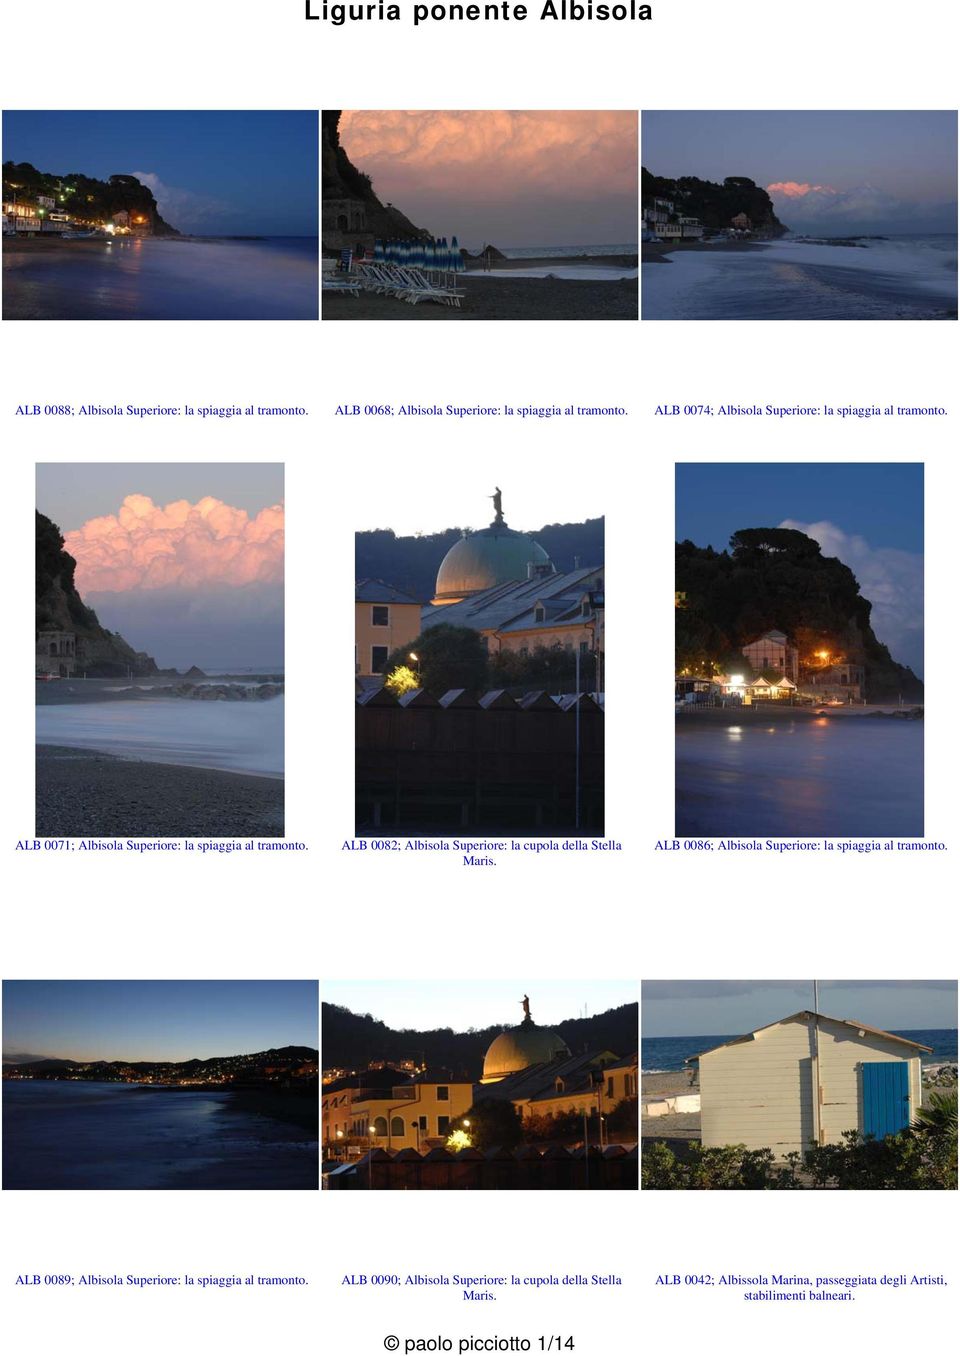 ALB 0082; Albisola Superiore: la cupola della Stella Maris. ALB 0086; Albisola Superiore: la spiaggia al tramonto.